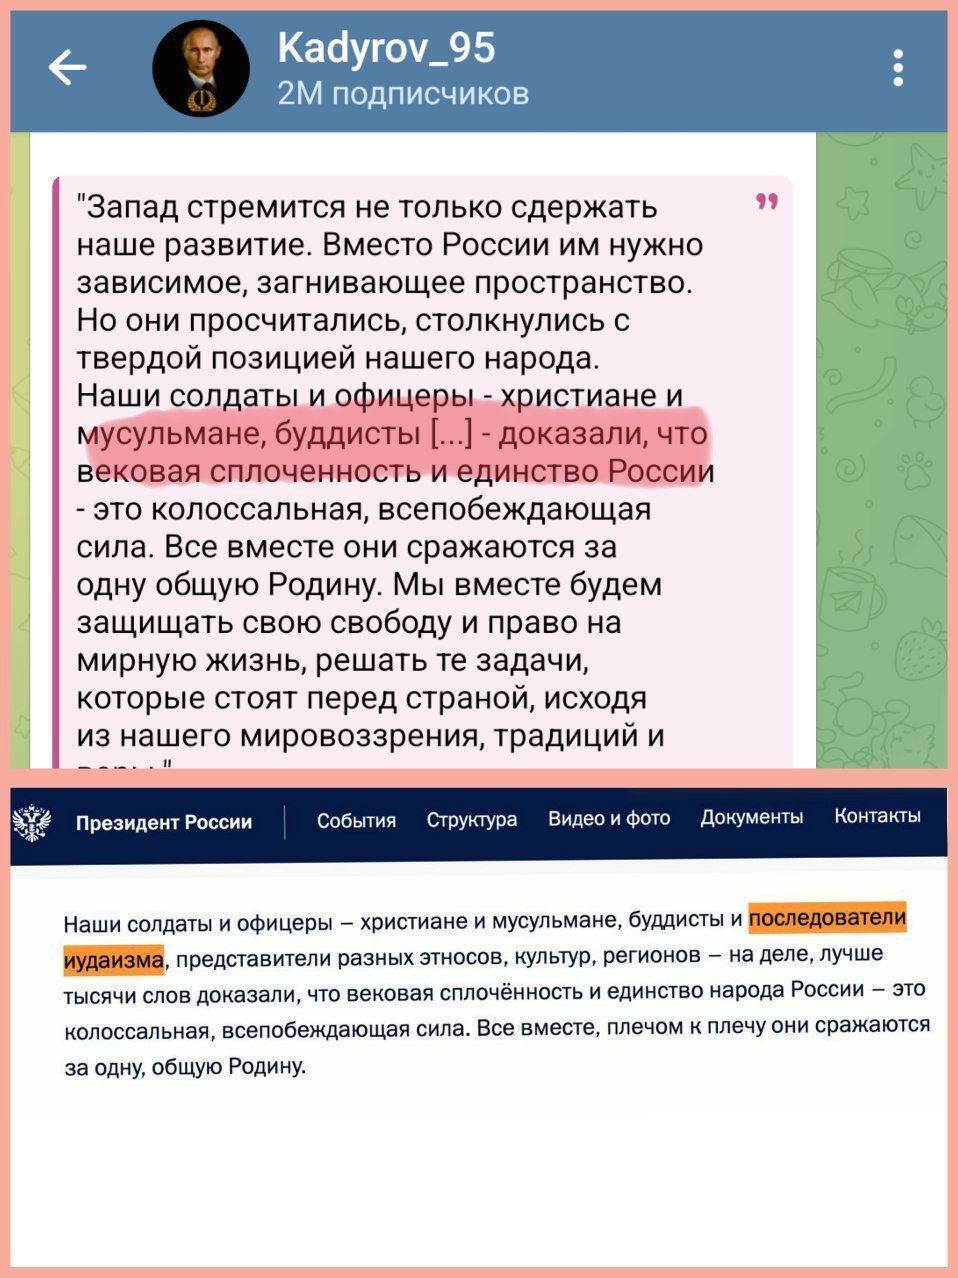 Кадыров "отцензурировал" обращение Путина к Федеральному собранию: стало известно, какой отрывок "вычеркнул"